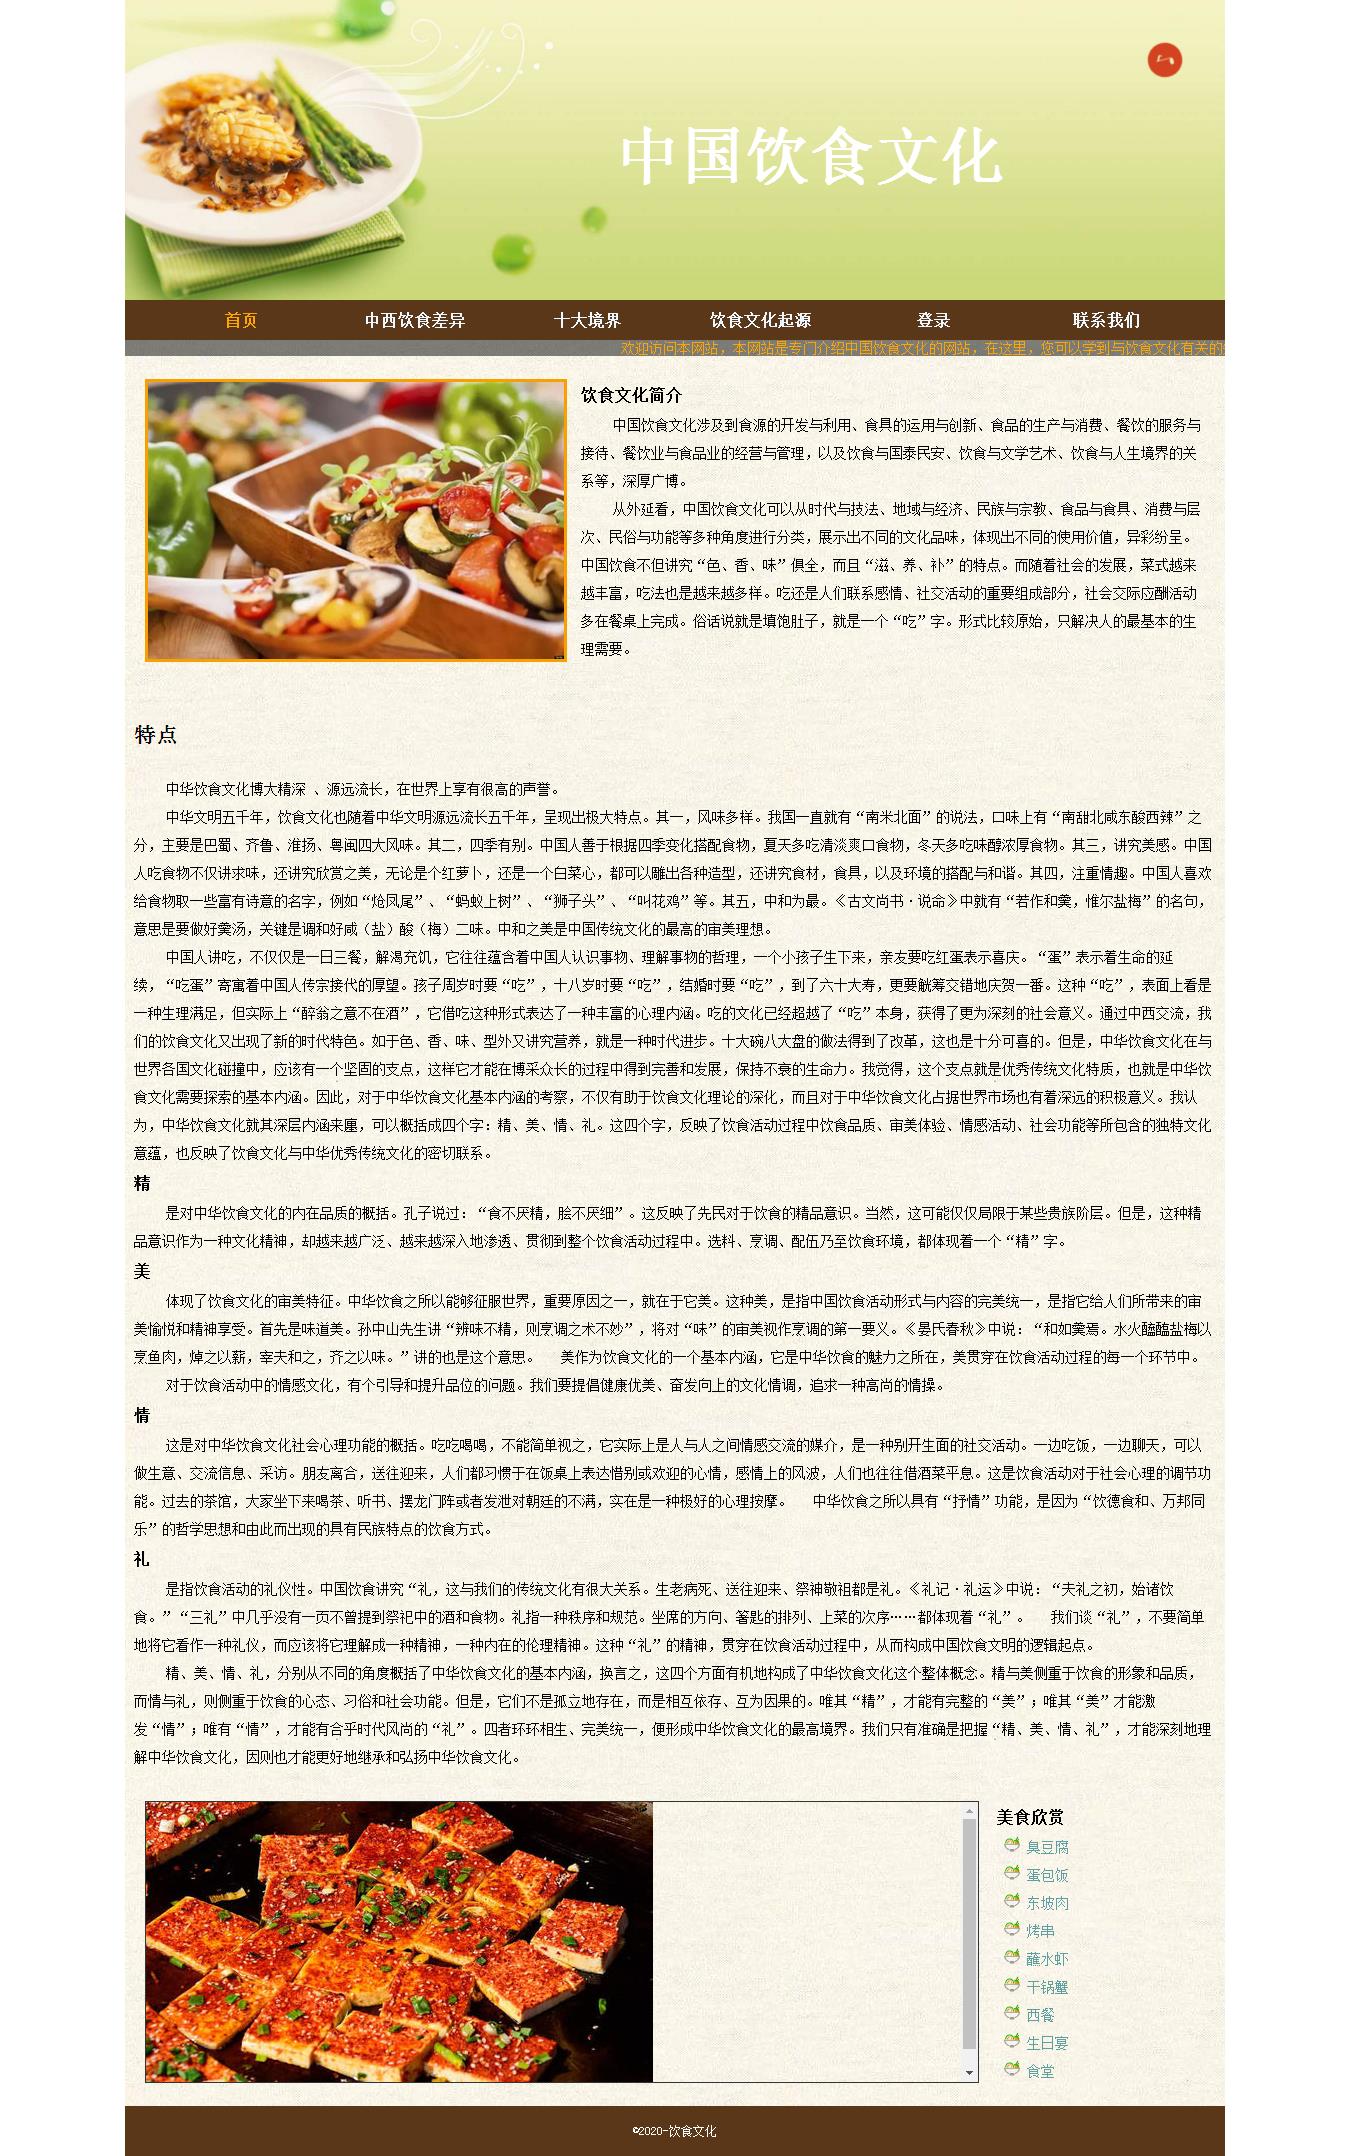 编号：1381 中国饮食文化 6页 视频 音乐 下拉菜单 滚动文字 注册 鼠标经过特效 30元